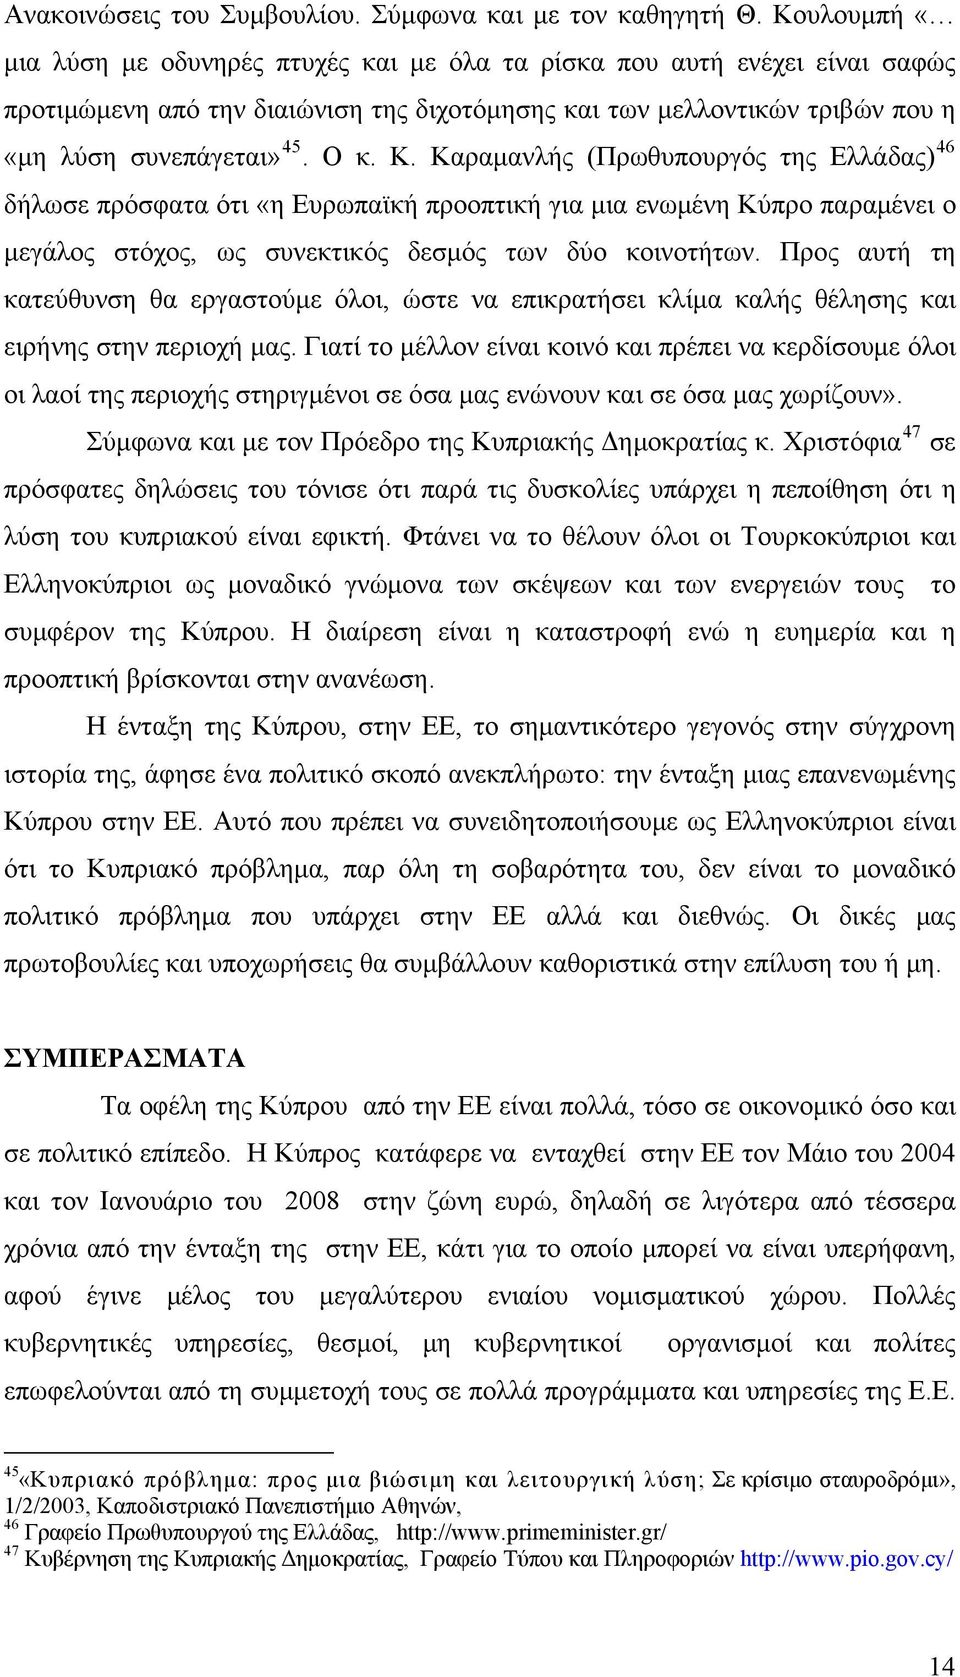 Καραμανλής (Πρωθυπουργός της Ελλάδας) 46 δήλωσε πρόσφατα ότι «η Ευρωπαϊκή προοπτική για μια ενωμένη Κύπρο παραμένει ο μεγάλος στόχος, ως συνεκτικός δεσμός των δύο κοινοτήτων.